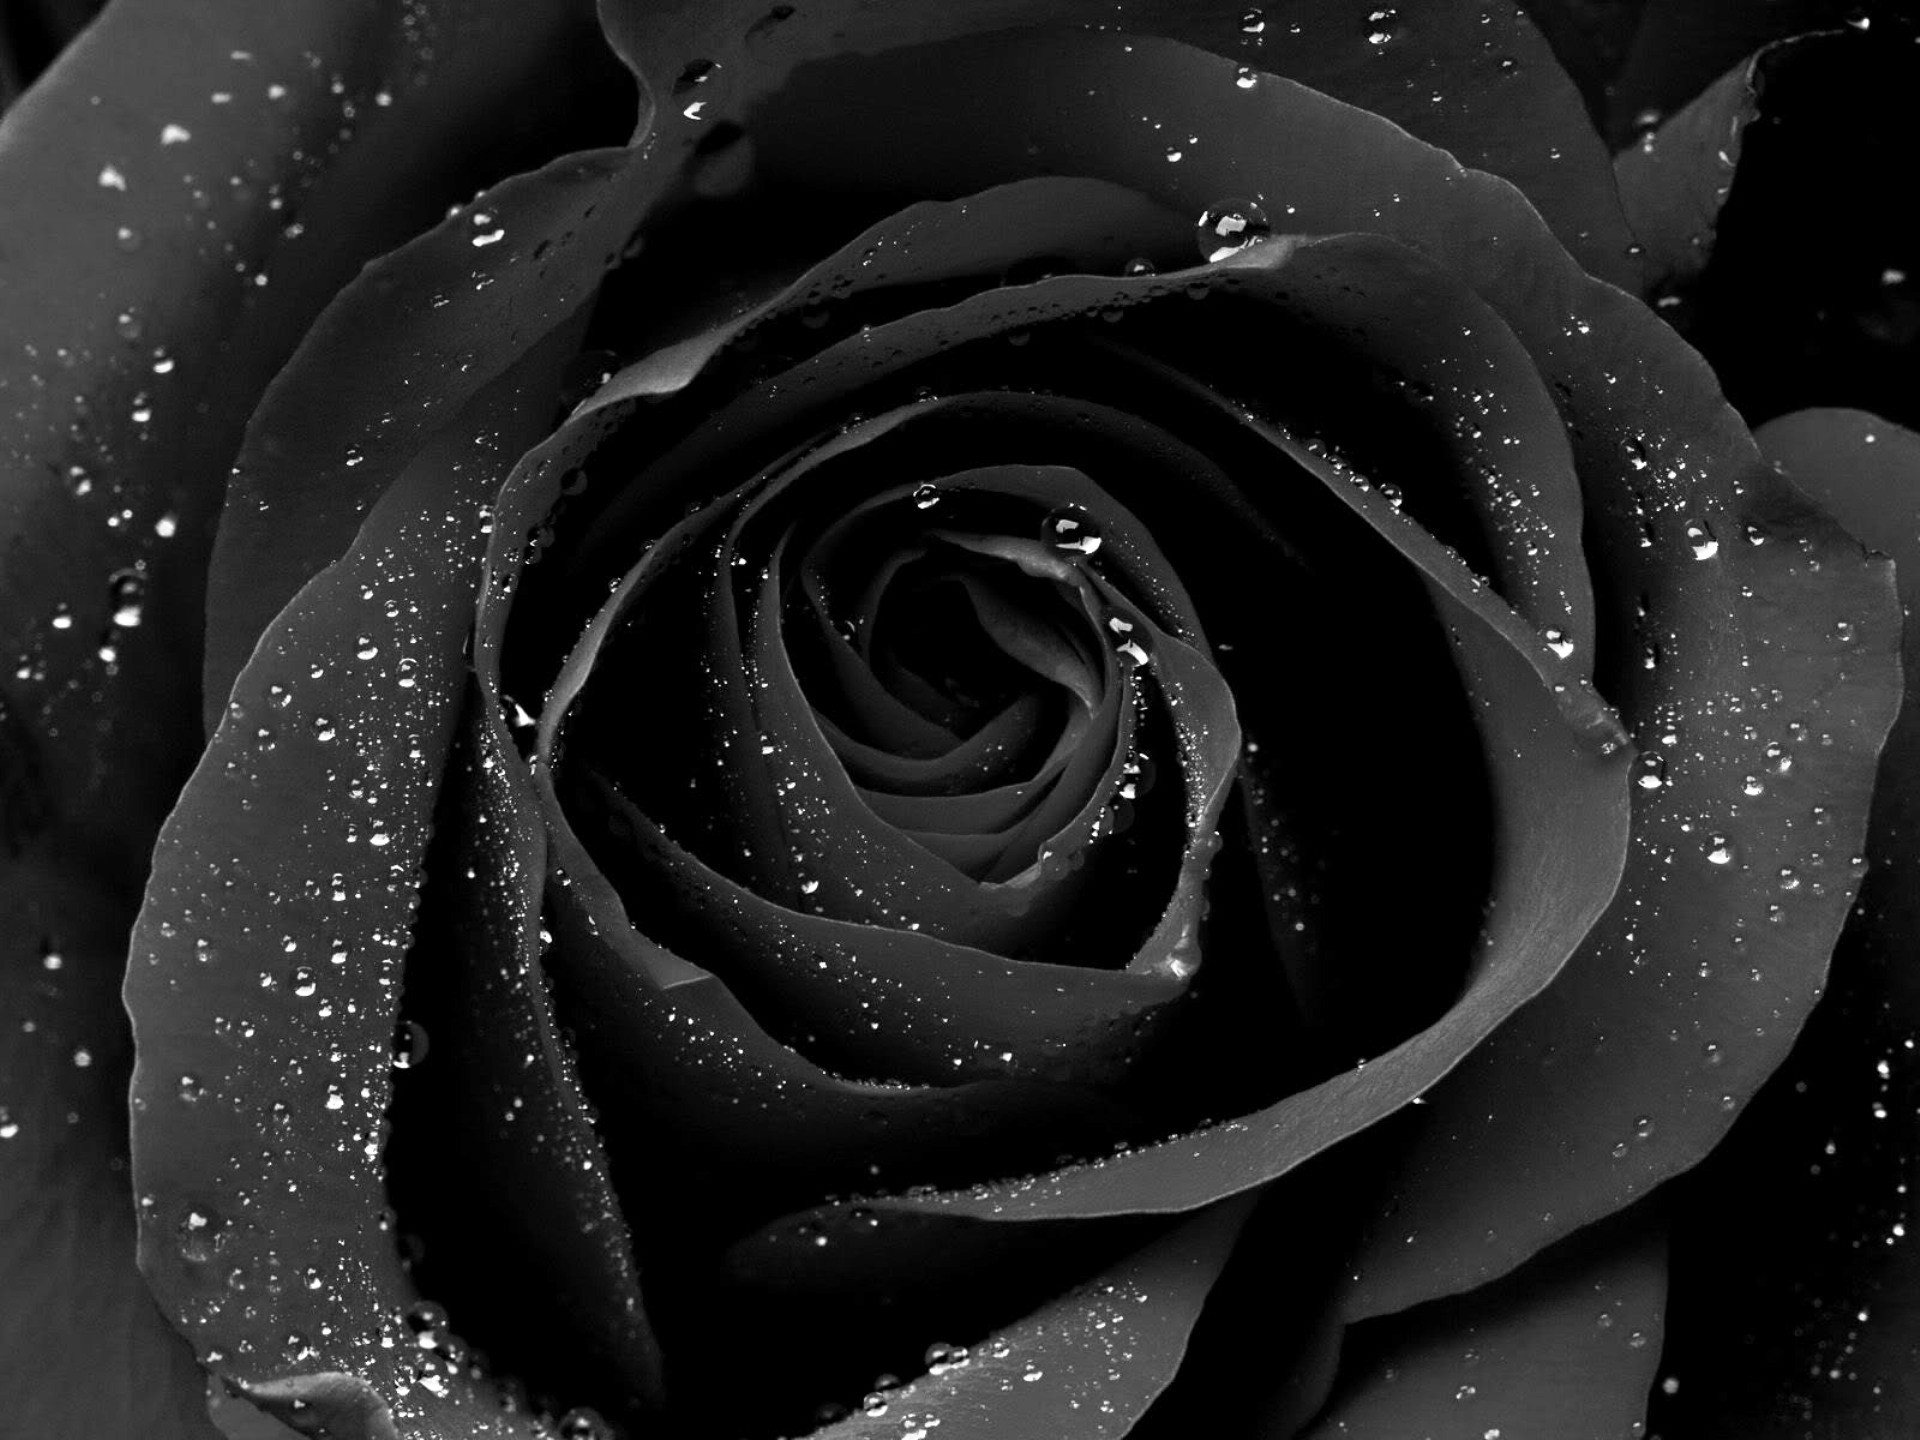 76 Wallpaper Of Black Rose  WallpaperSafari